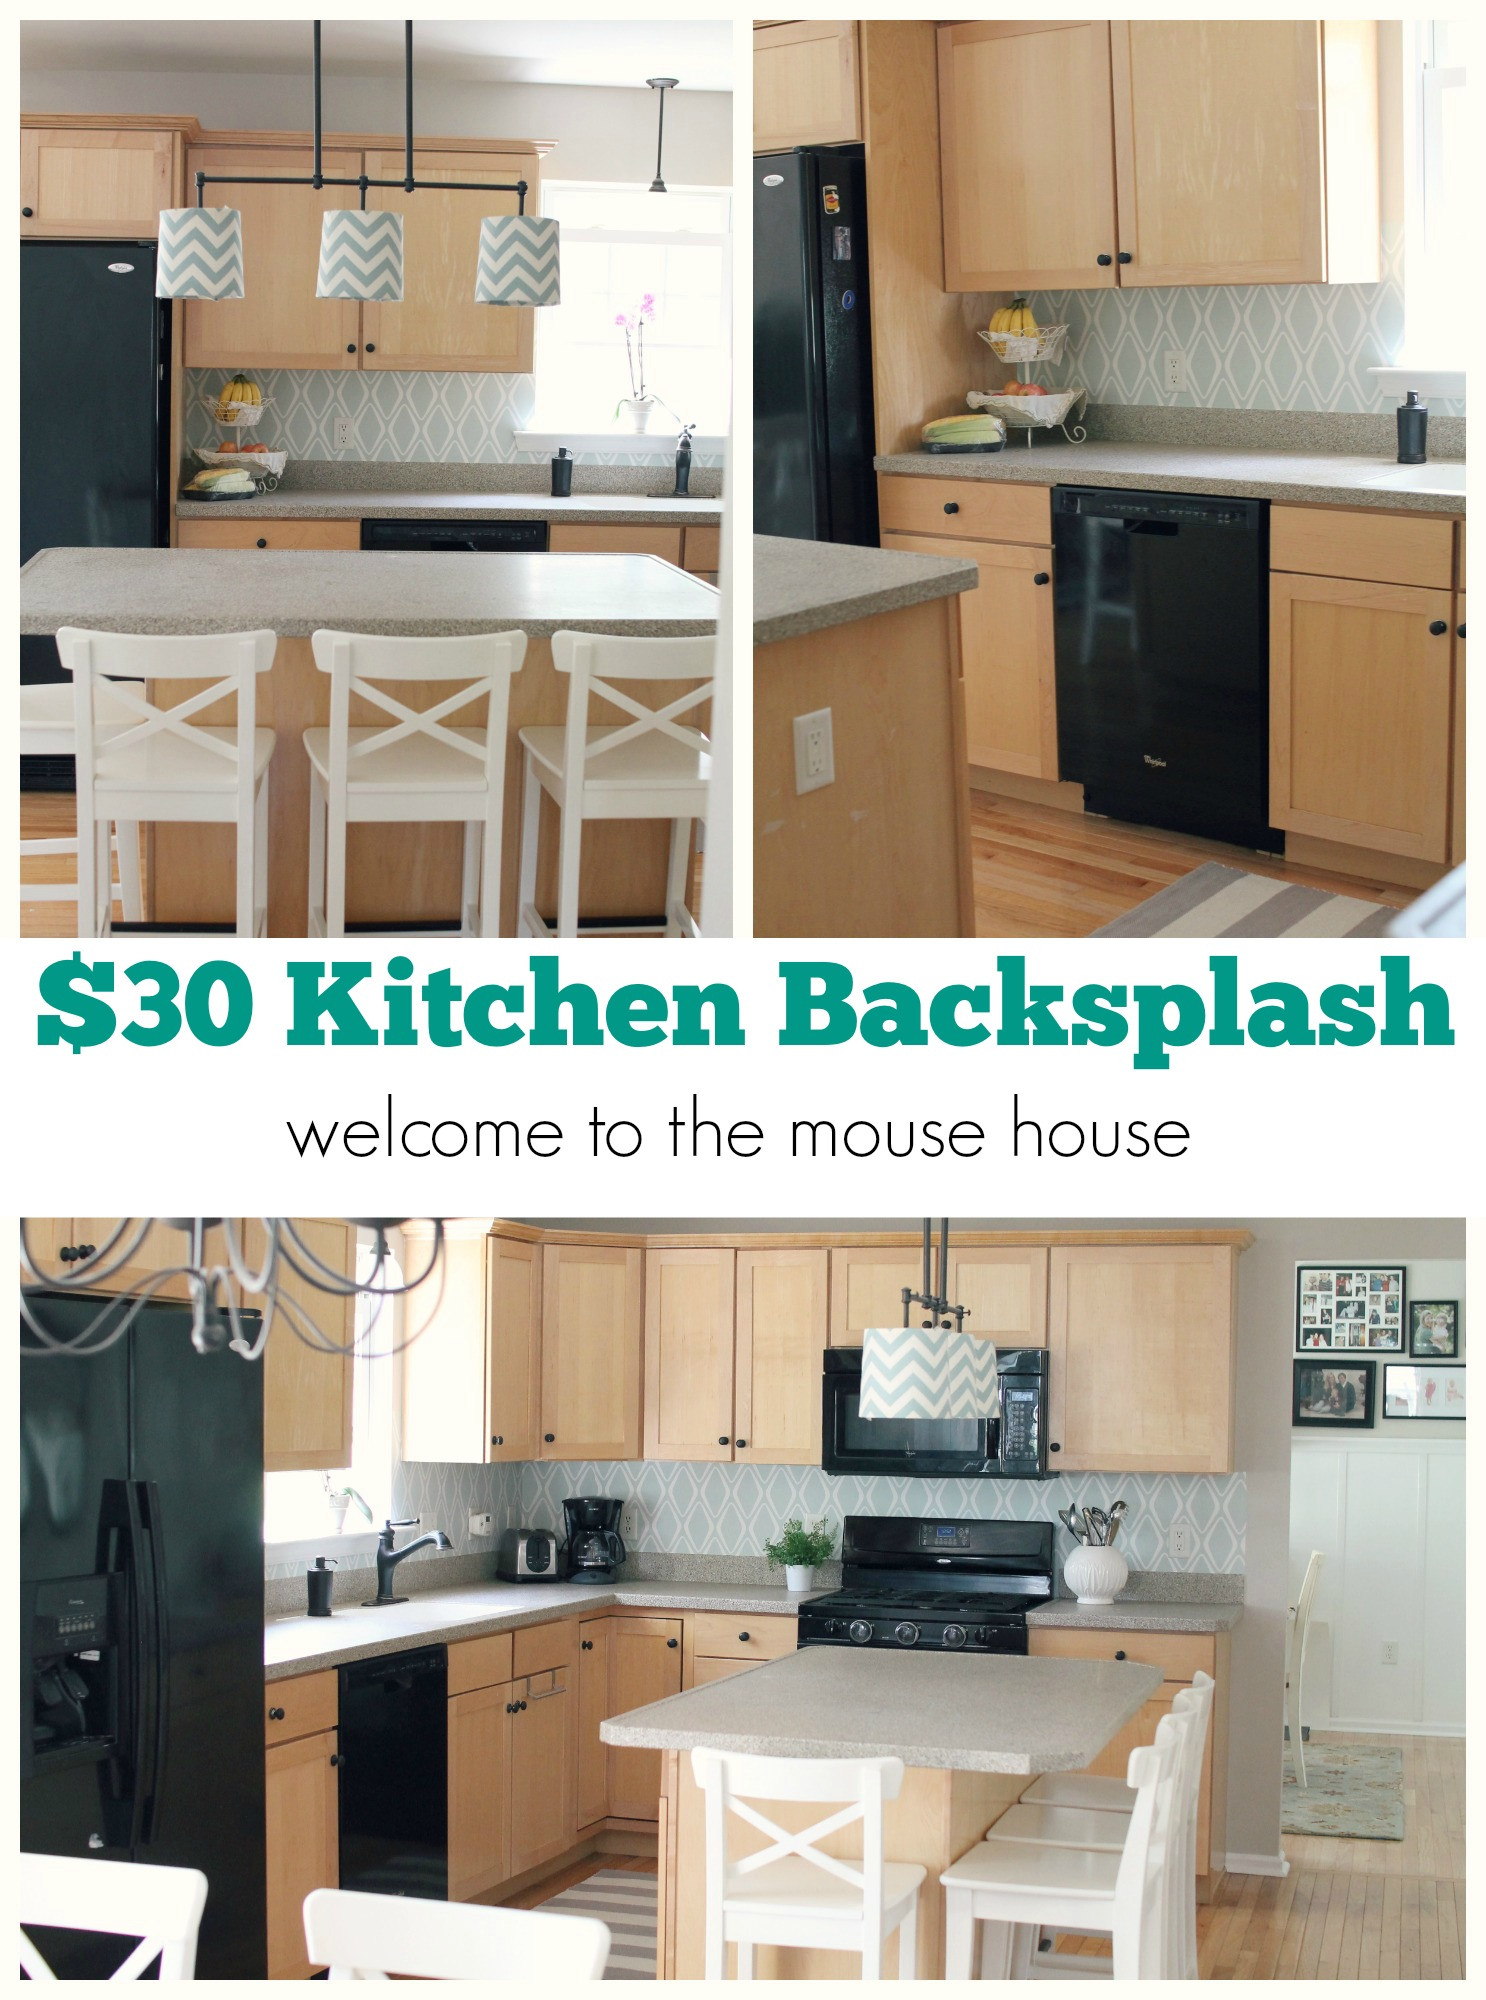 Easy Kitchen Backsplashes
 Easy Kitchen Backsplash $30 Tar Wallpaper